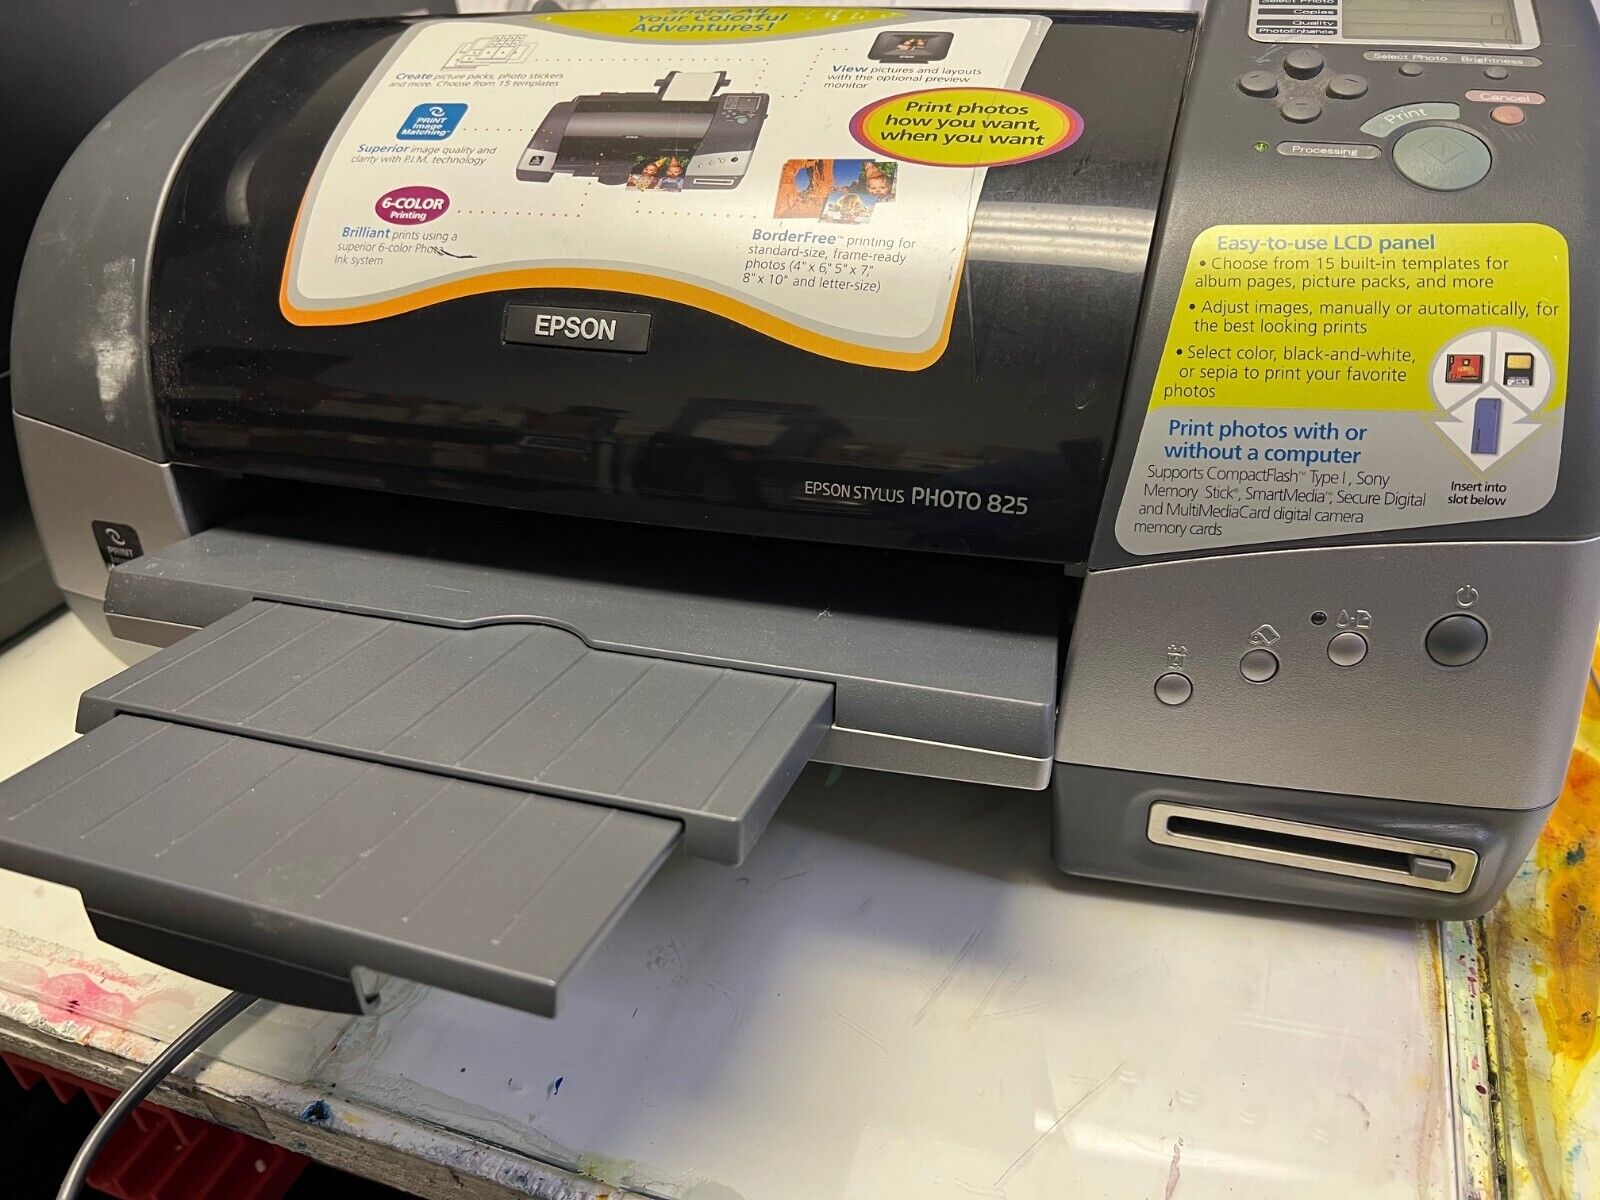 Epson Stylus Photo 825 Ink Jet Printer - AS IS